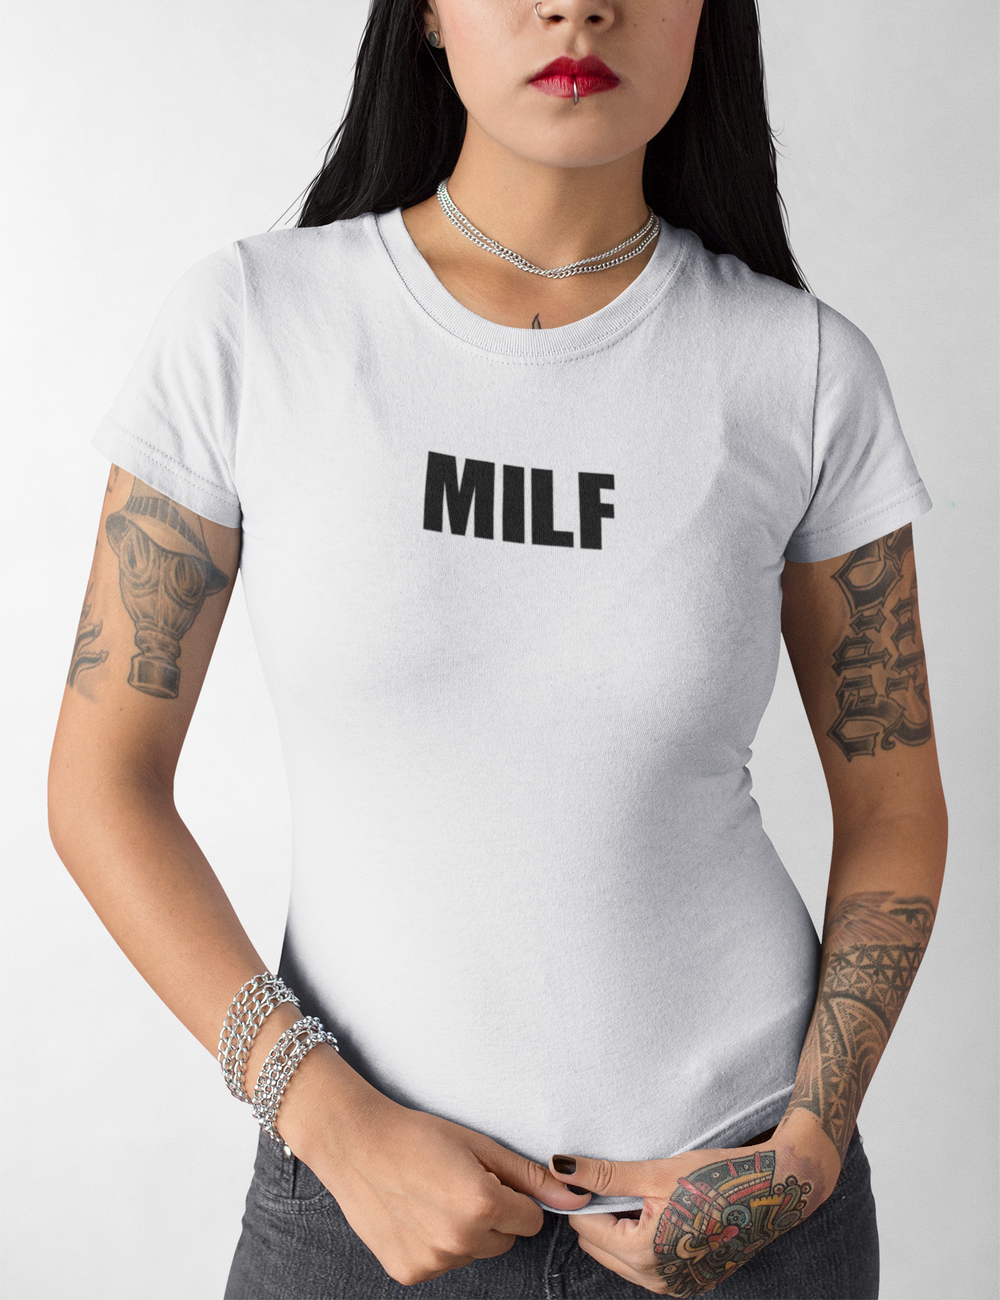 MILF | Women's Fitted T-Shirt OniTakai